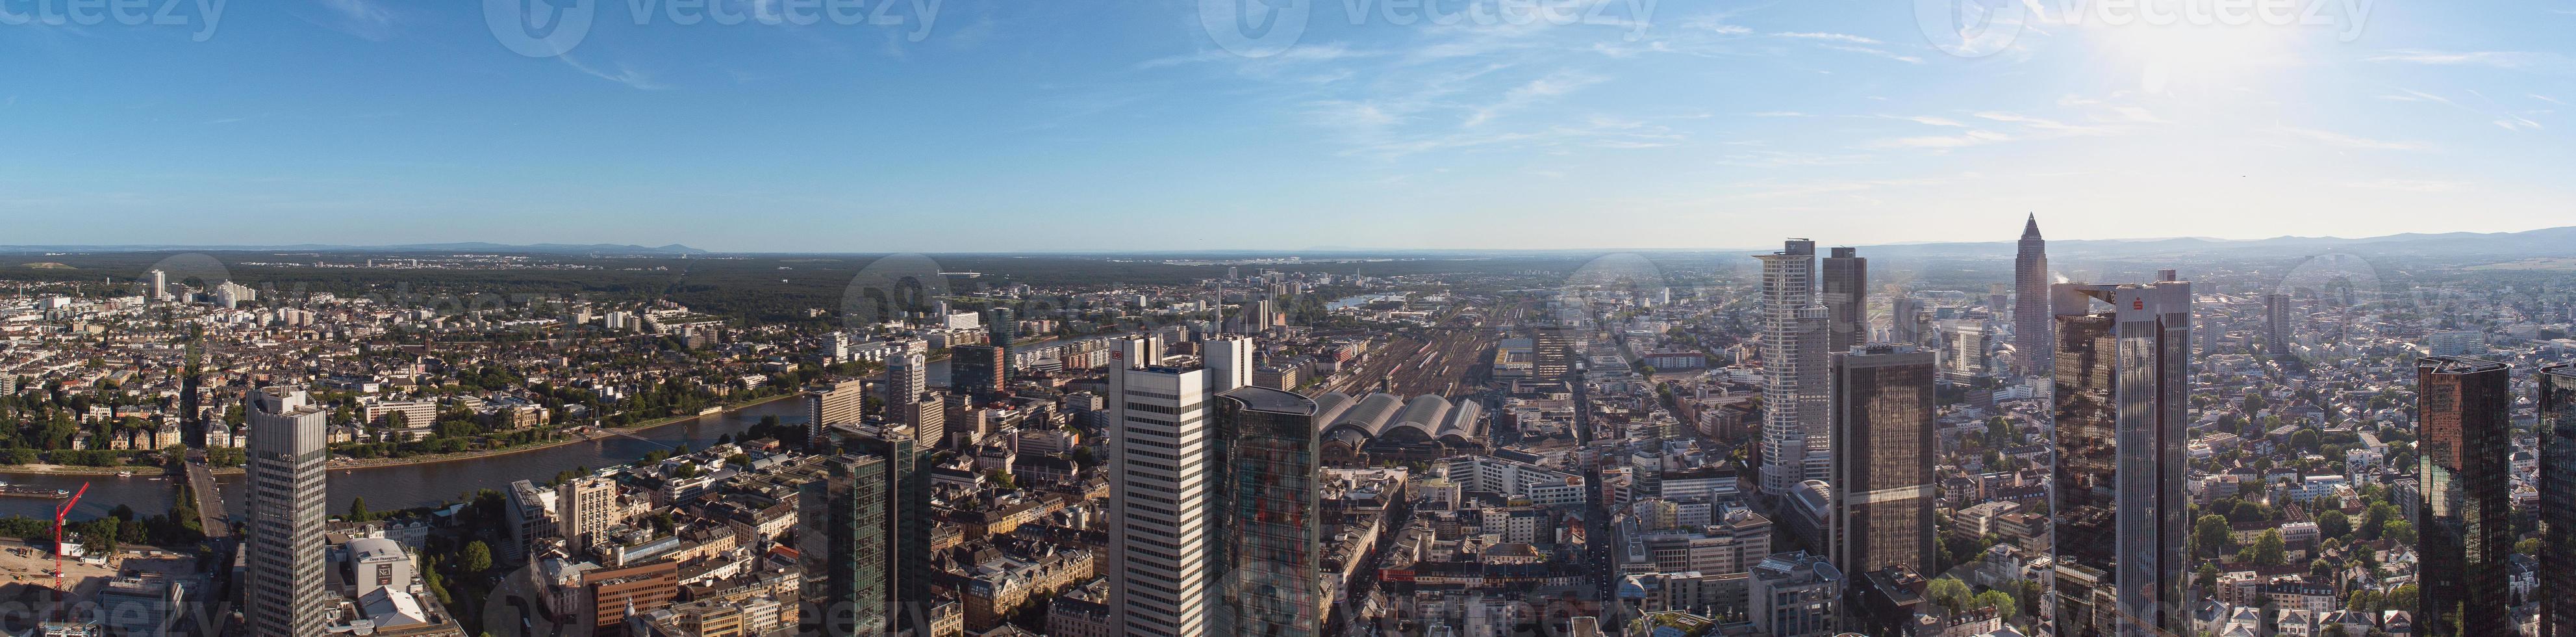 Francoforte sul Meno skyline, Germania, Europa, il centro finanziario del paese. foto